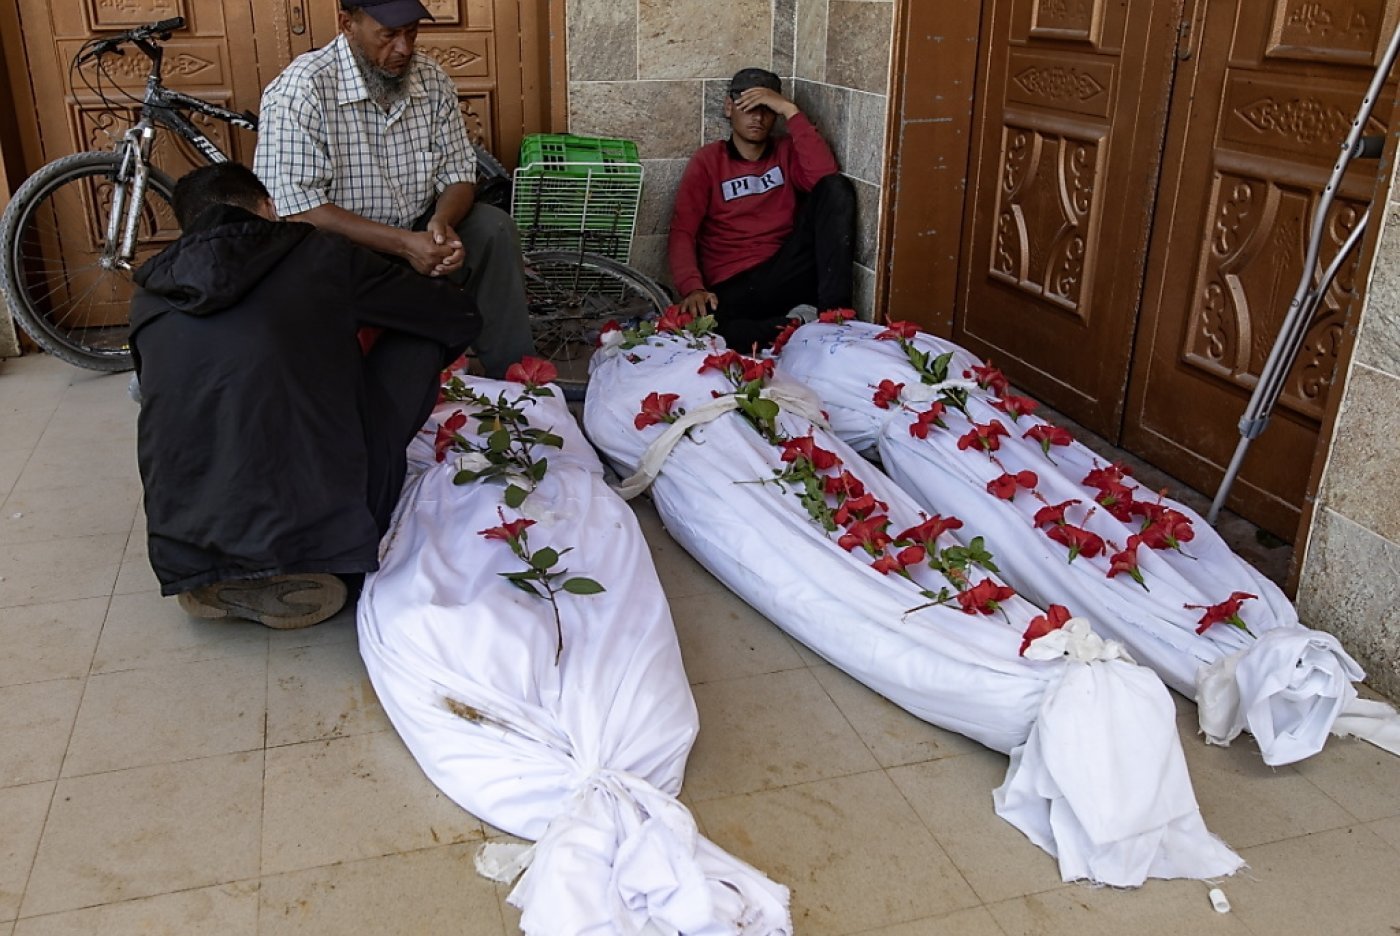 La Défense civile de Gaza a indiqué avoir exhumé depuis samedi 340 corps de personnes tuées et enterrées par les forces israéliennes dans des fosses communes à l'intérieur de l'hôpital Nasser. KEYSTONE